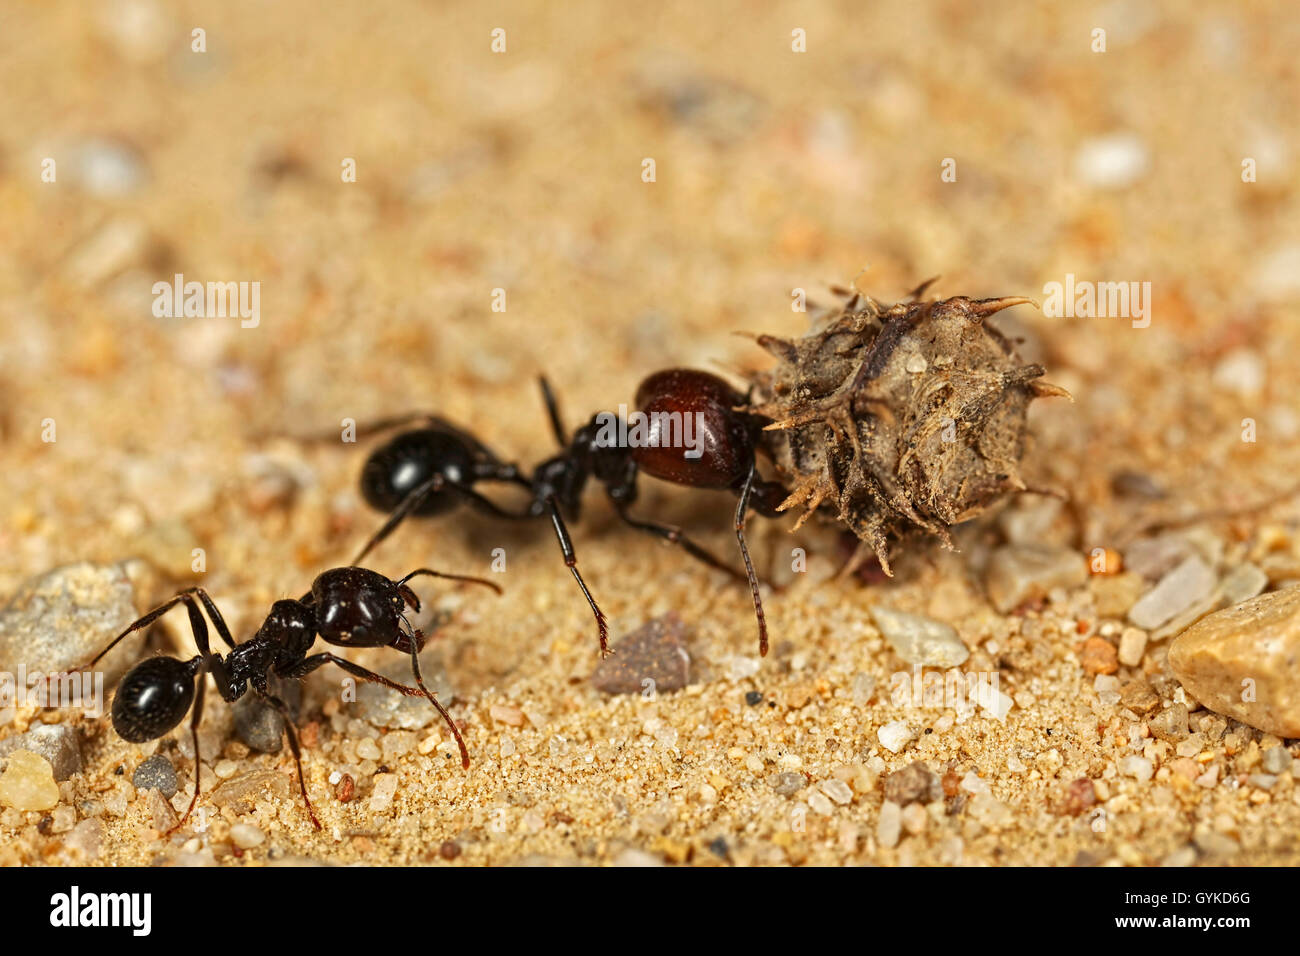 Ameisen (Formicidae), schwarze Ameise traegt die Frucht eines Schneckenklees zum Nest | ants (Formicidae), ant carrying a fruit  Stock Photo